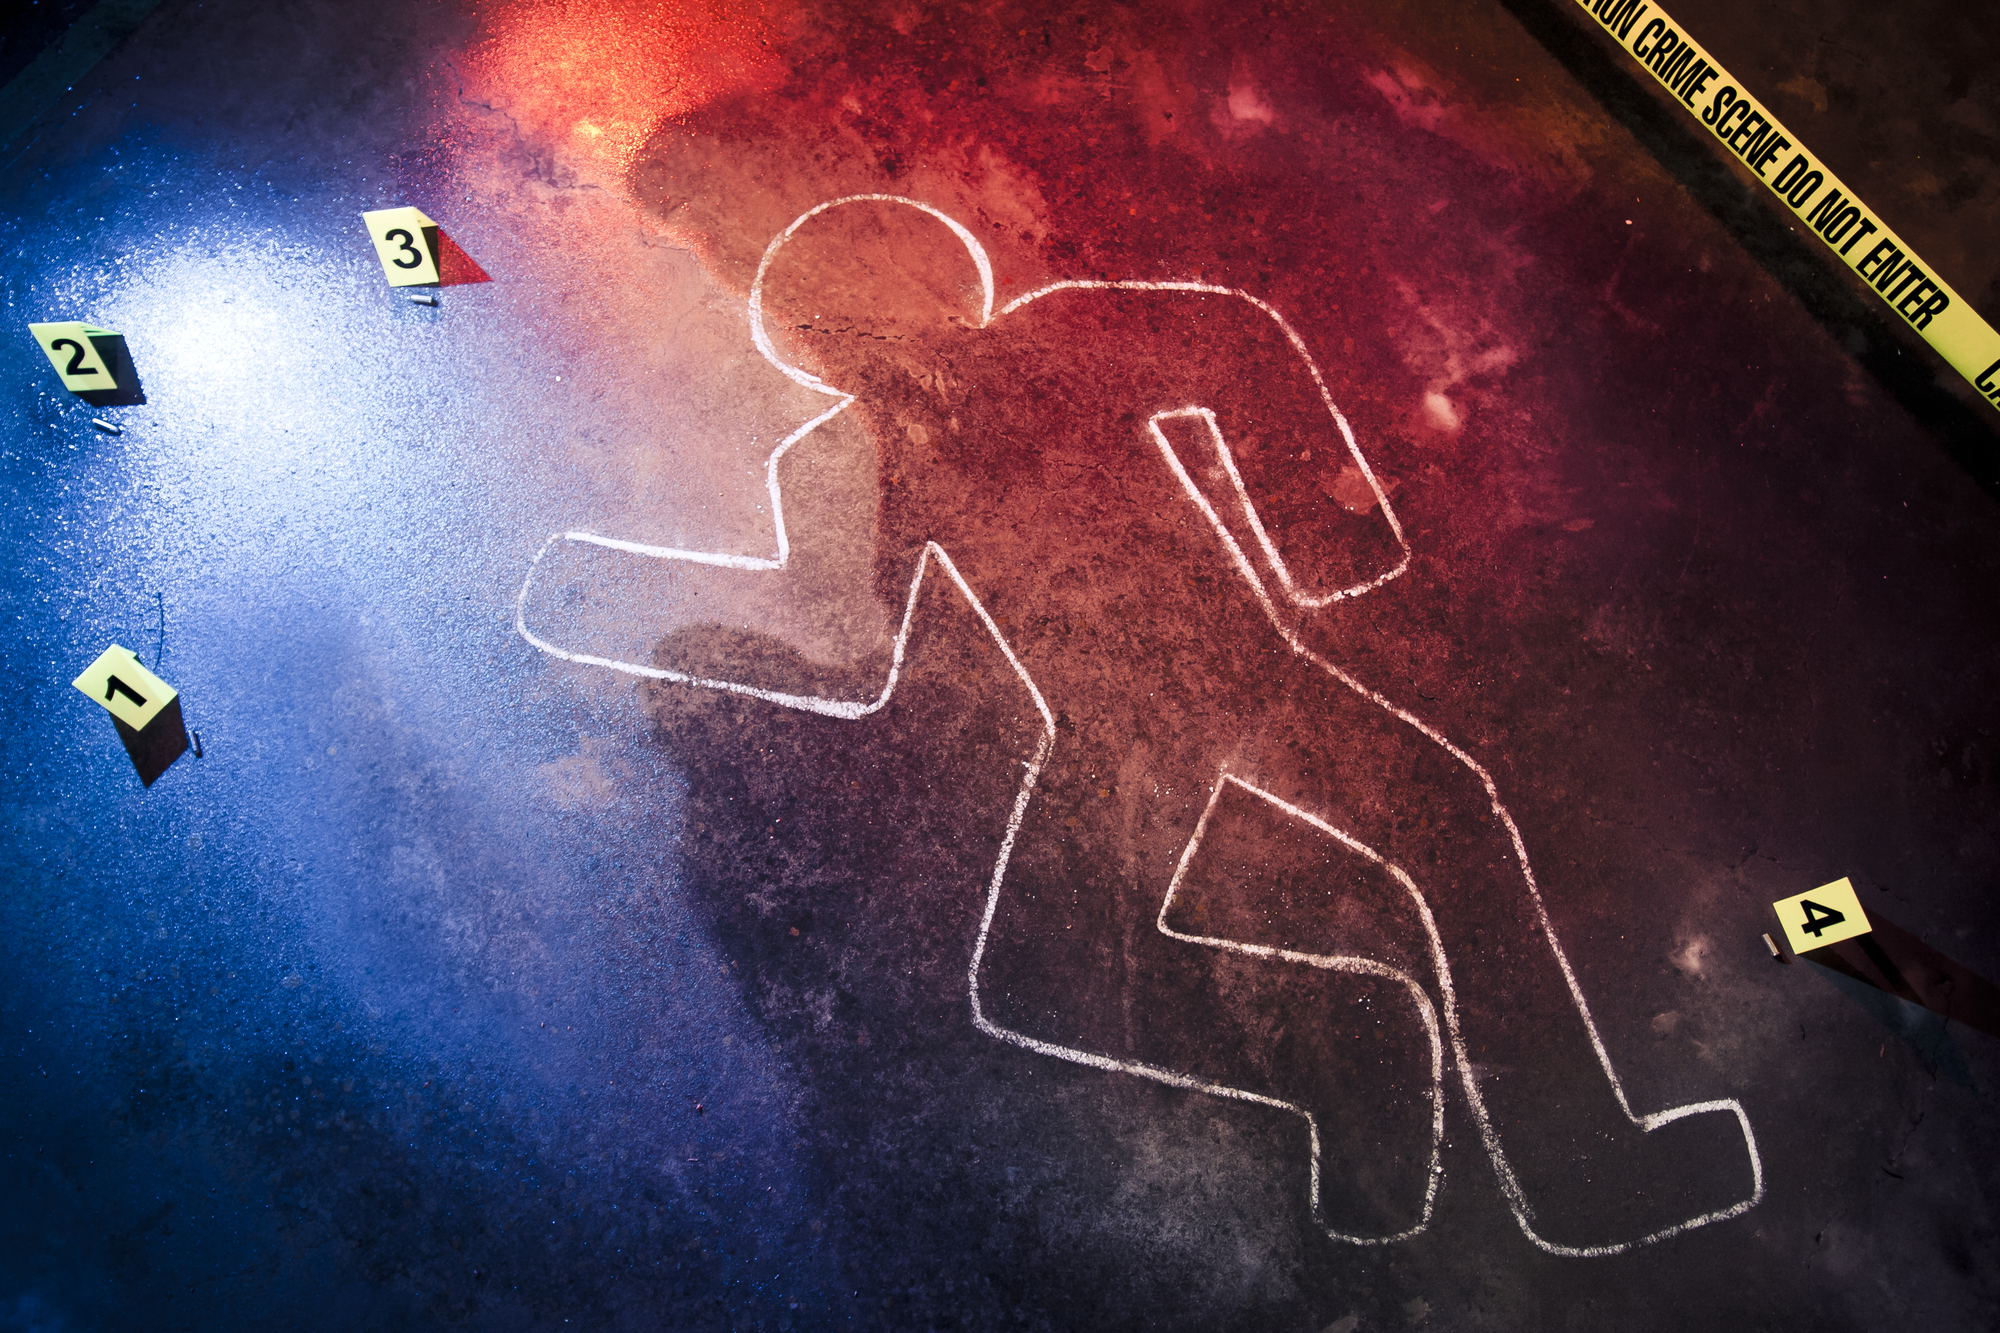 Holtan találtak egy nőt Óbudán, halált okozó testi sértés miatt nyomoznak